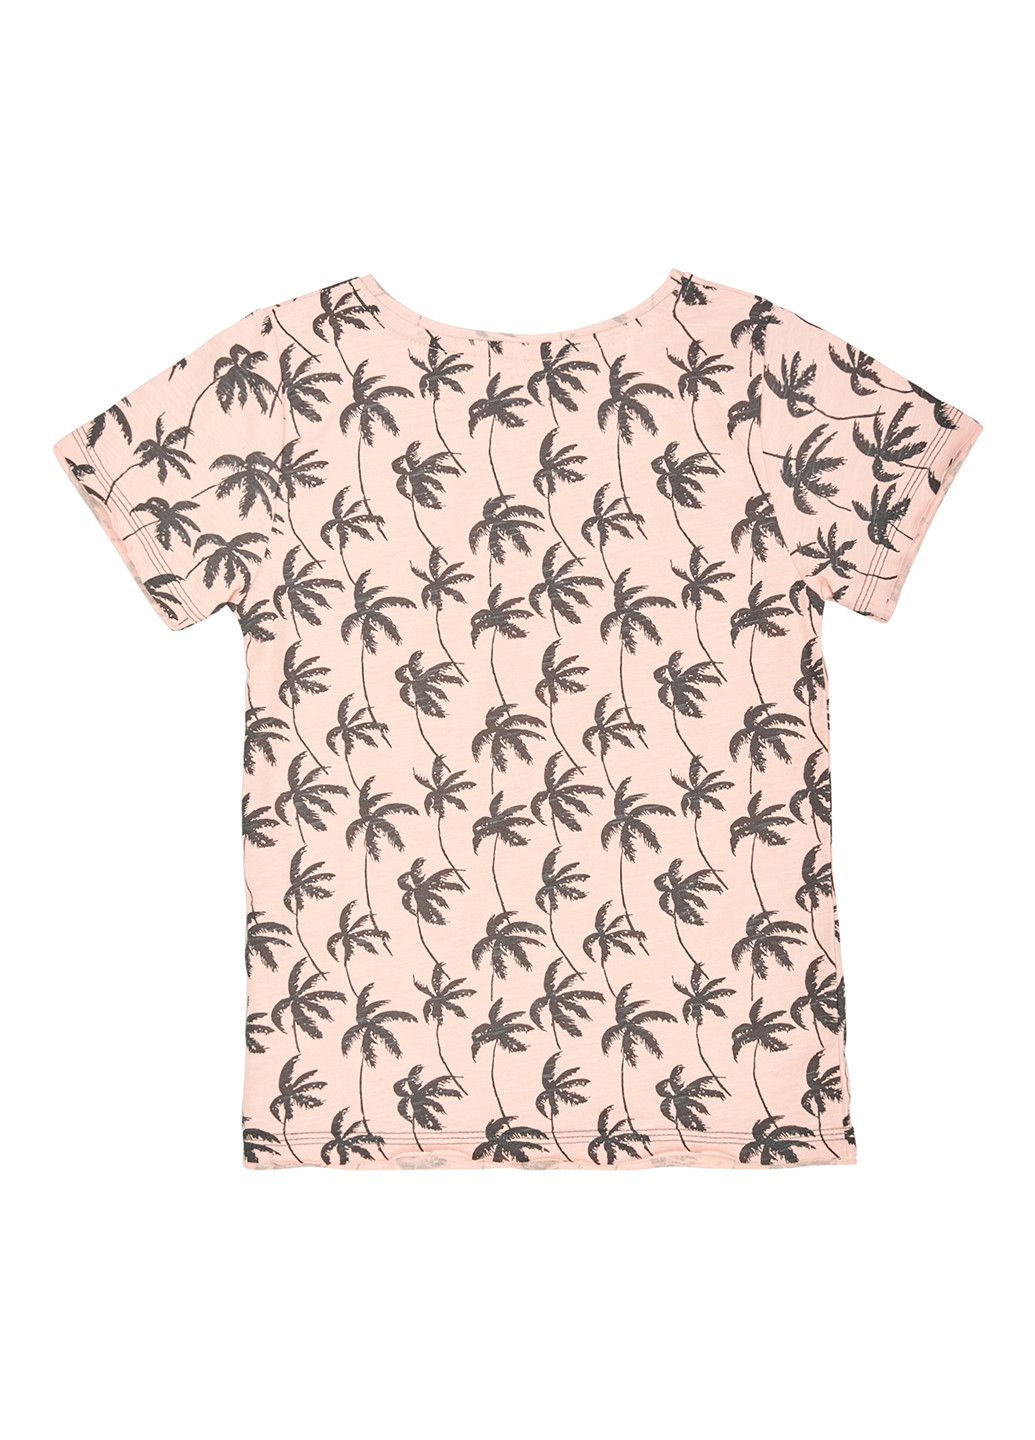 Бежева літня футболка Фламинго